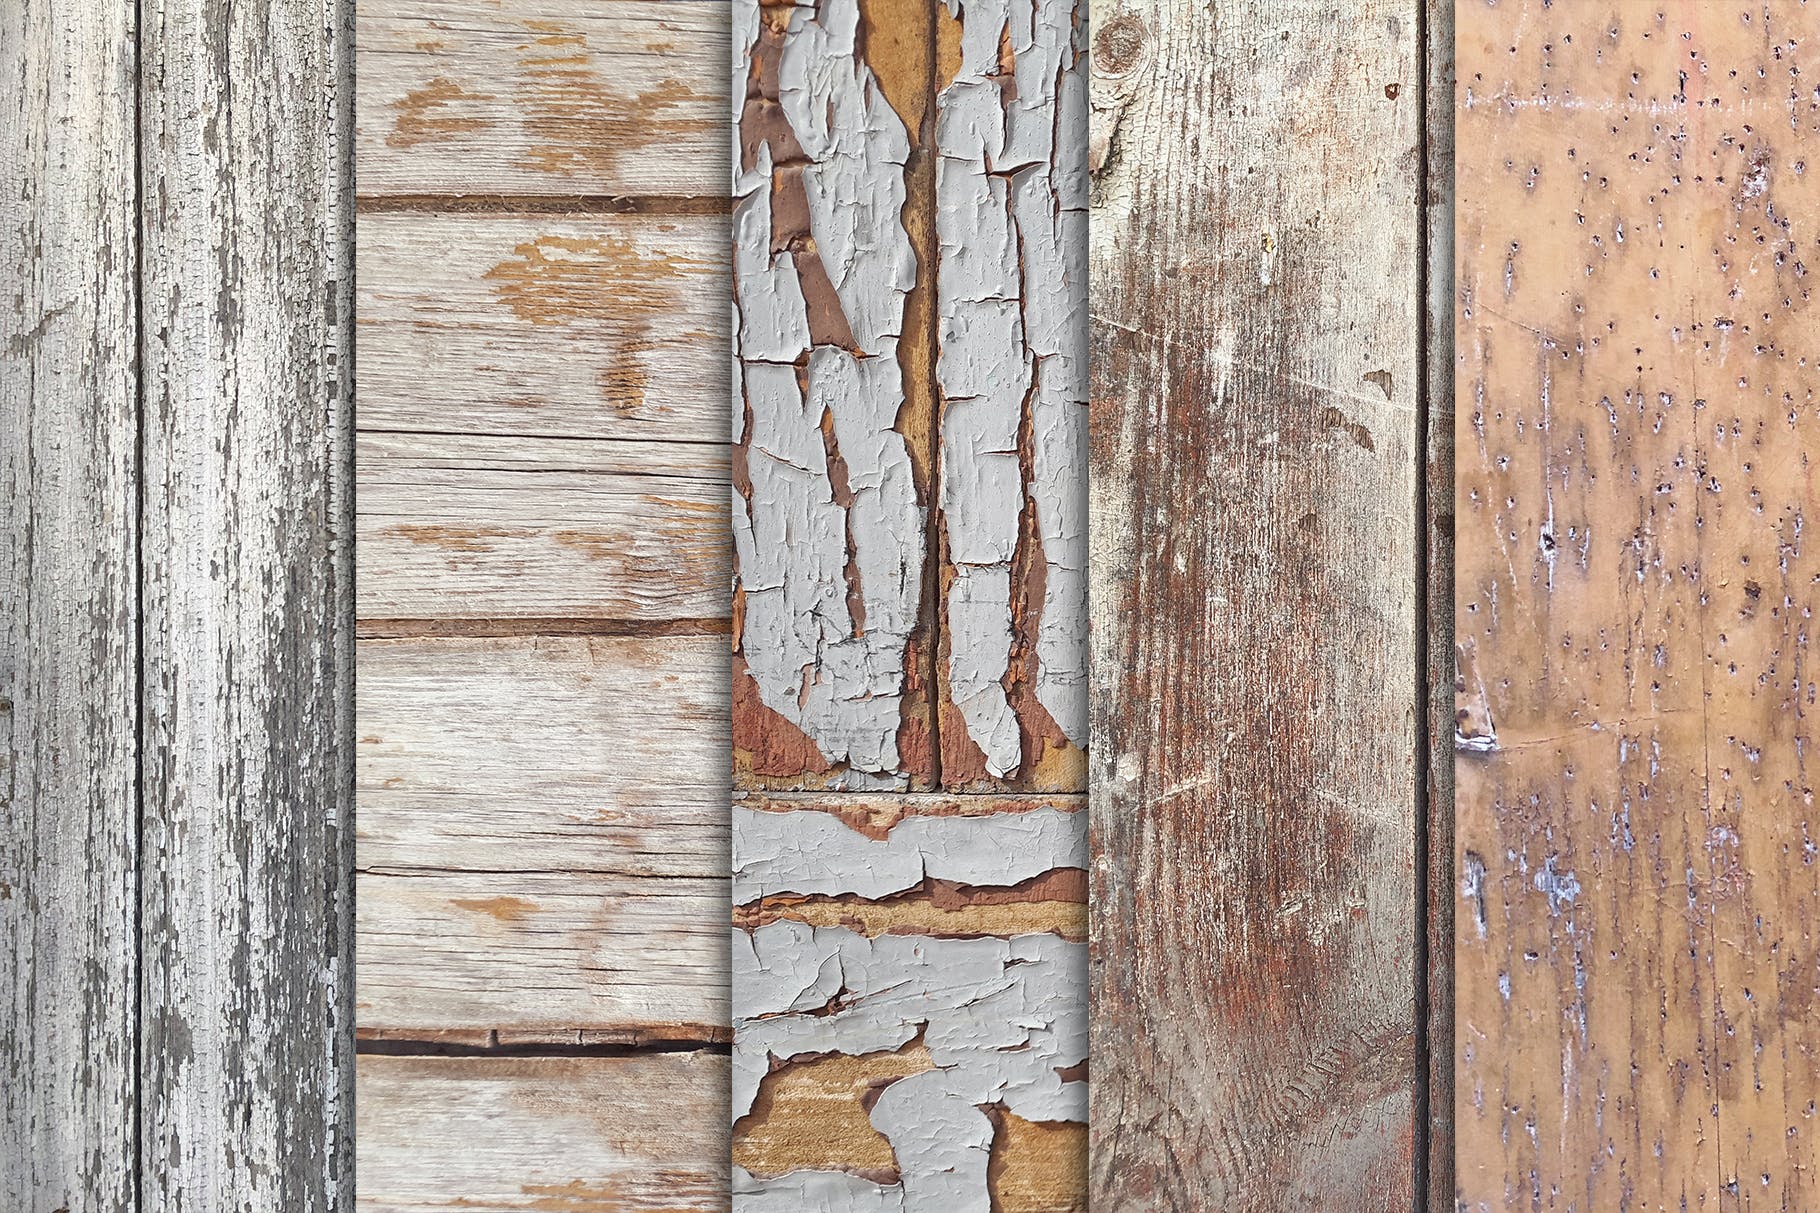 10张古老木地板高清照片图片背景素材v3 Grunge Wood Textures x10 Vol 3插图1